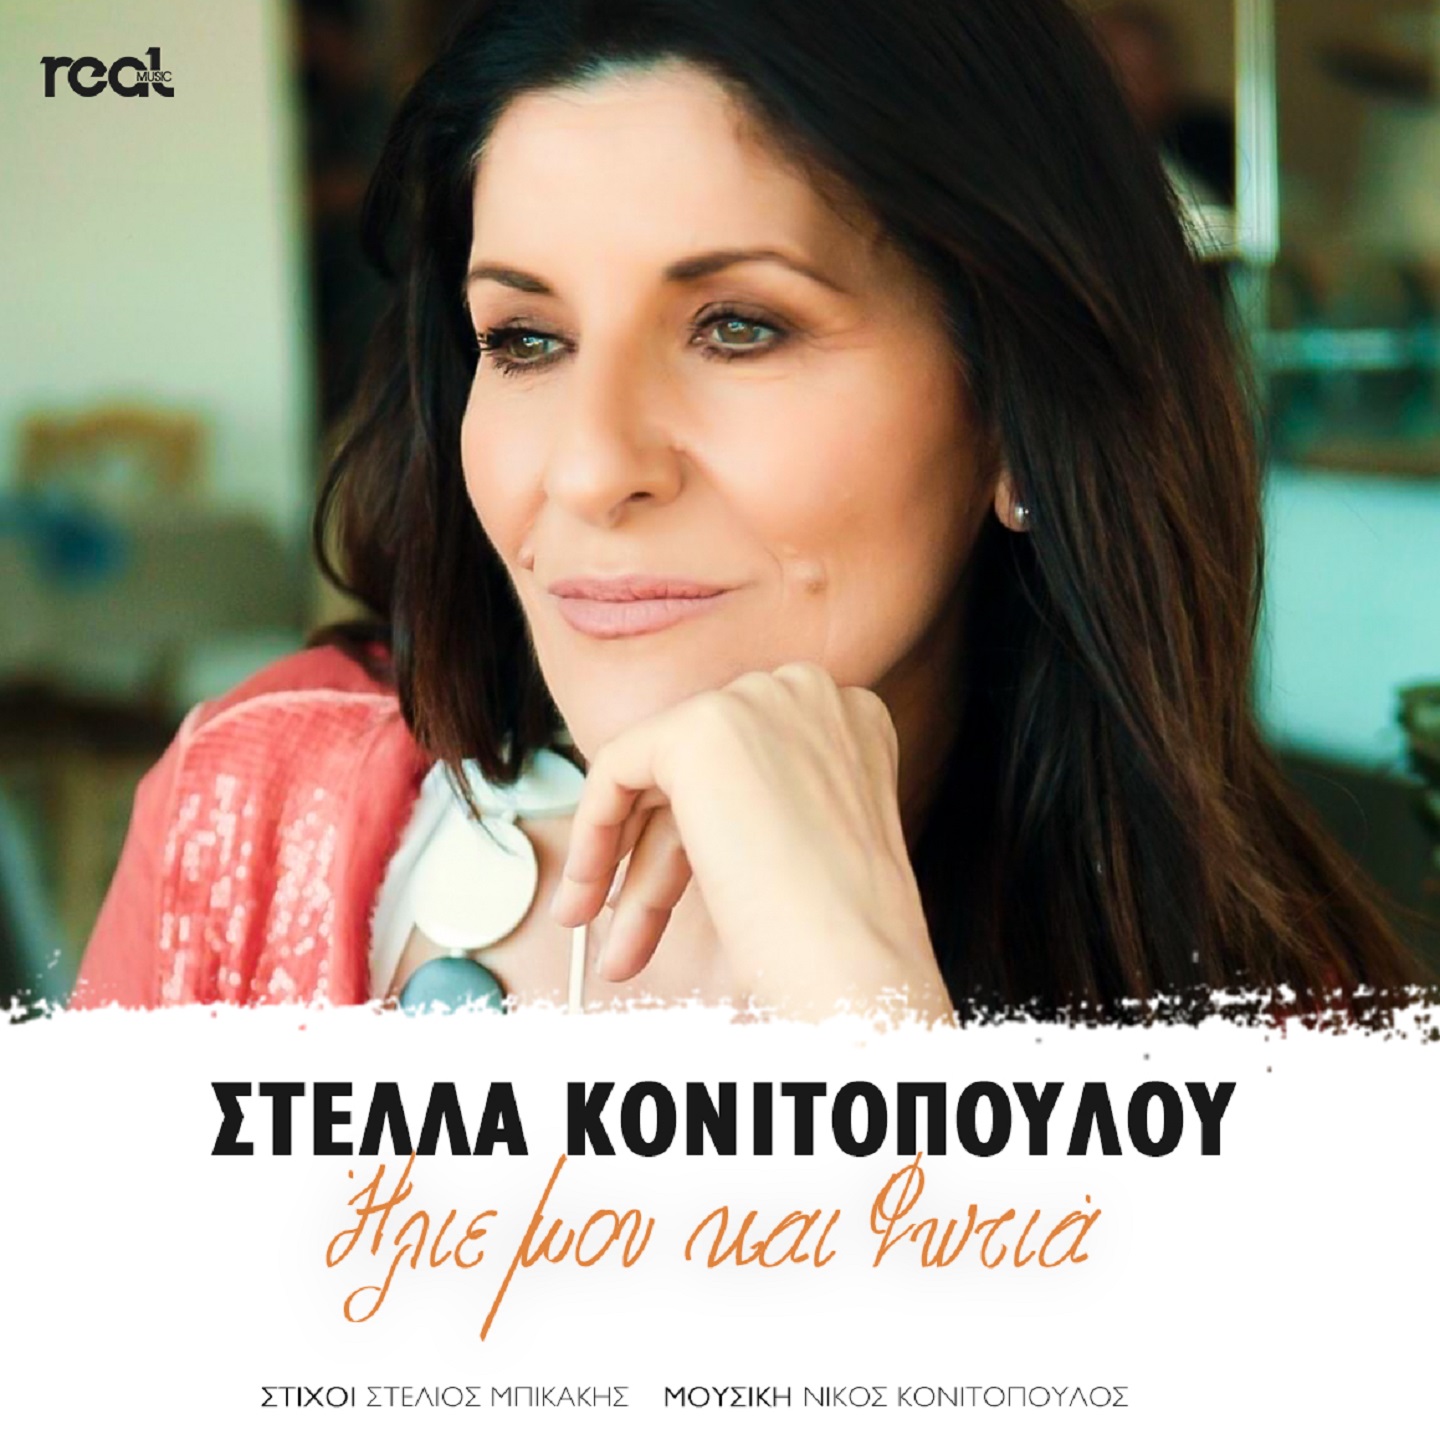 Στέλλα Κονιτοπούλου «Ηλιε μου και φωτιά» : Το νέο της τραγούδι κυκλοφορεί και έχει γίνει ήδη επιτυχία !